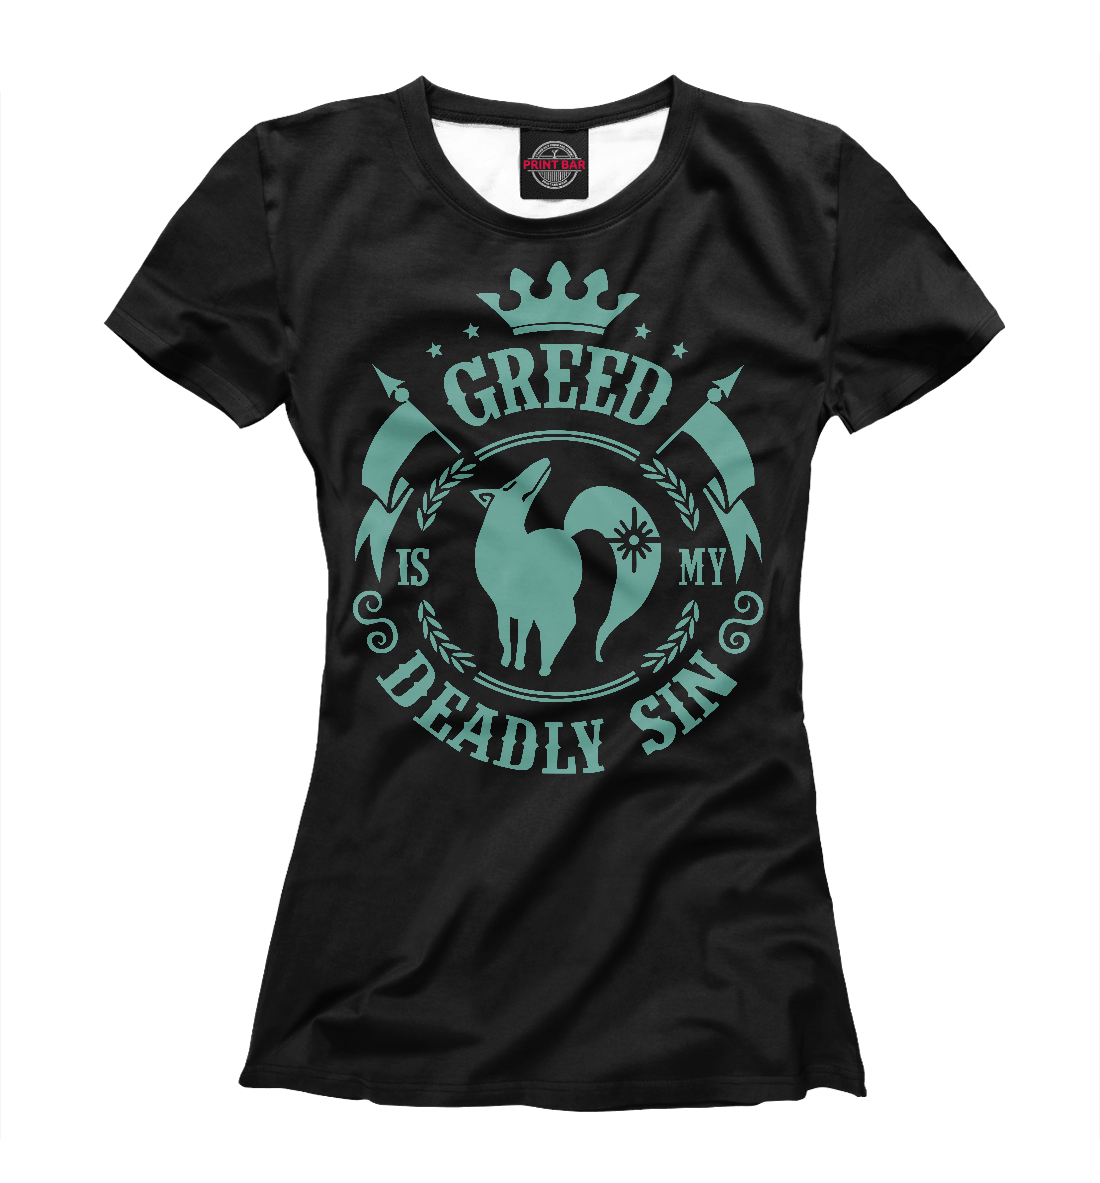 Футболка Greed is my sin для девочек, артикул: ANR-119452-fut-1mp